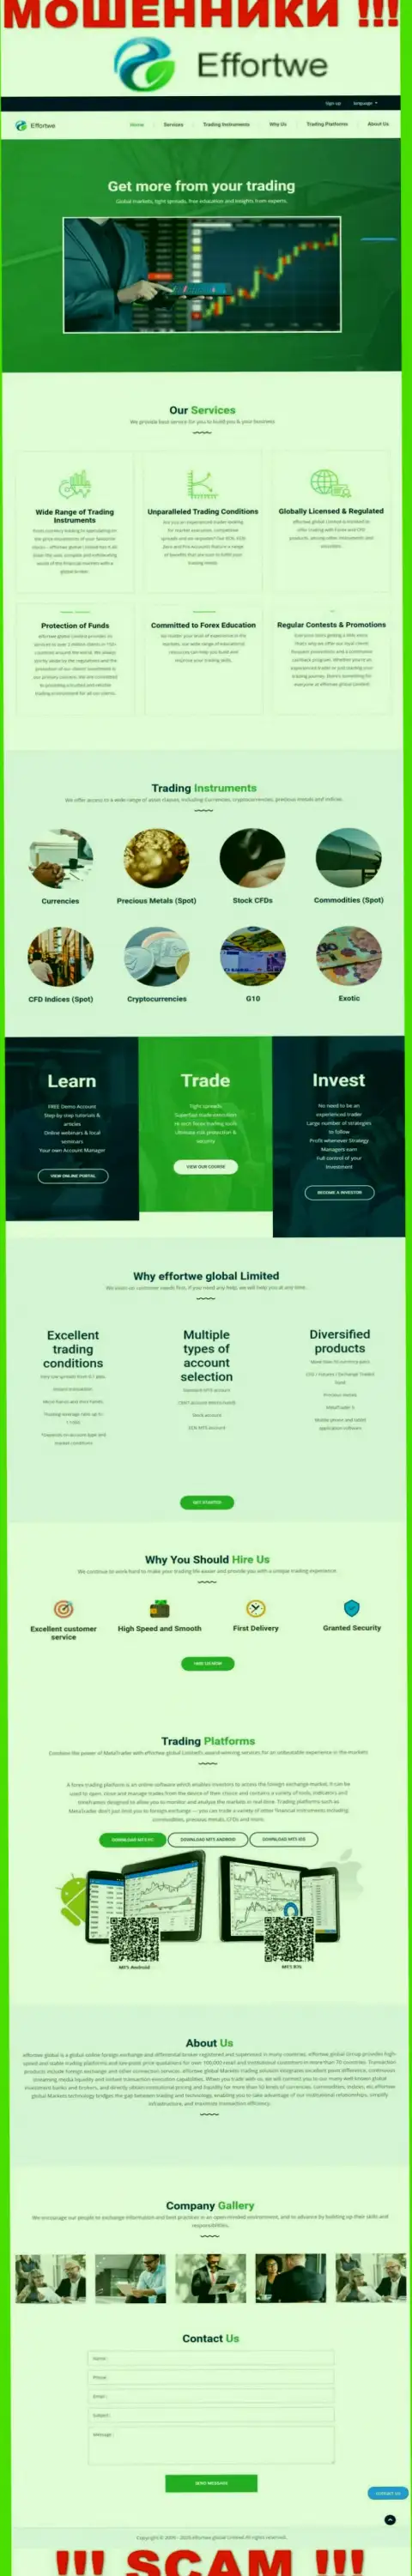 Веб-портал компании Effortwe Global Limited, заполненный фейковой инфой